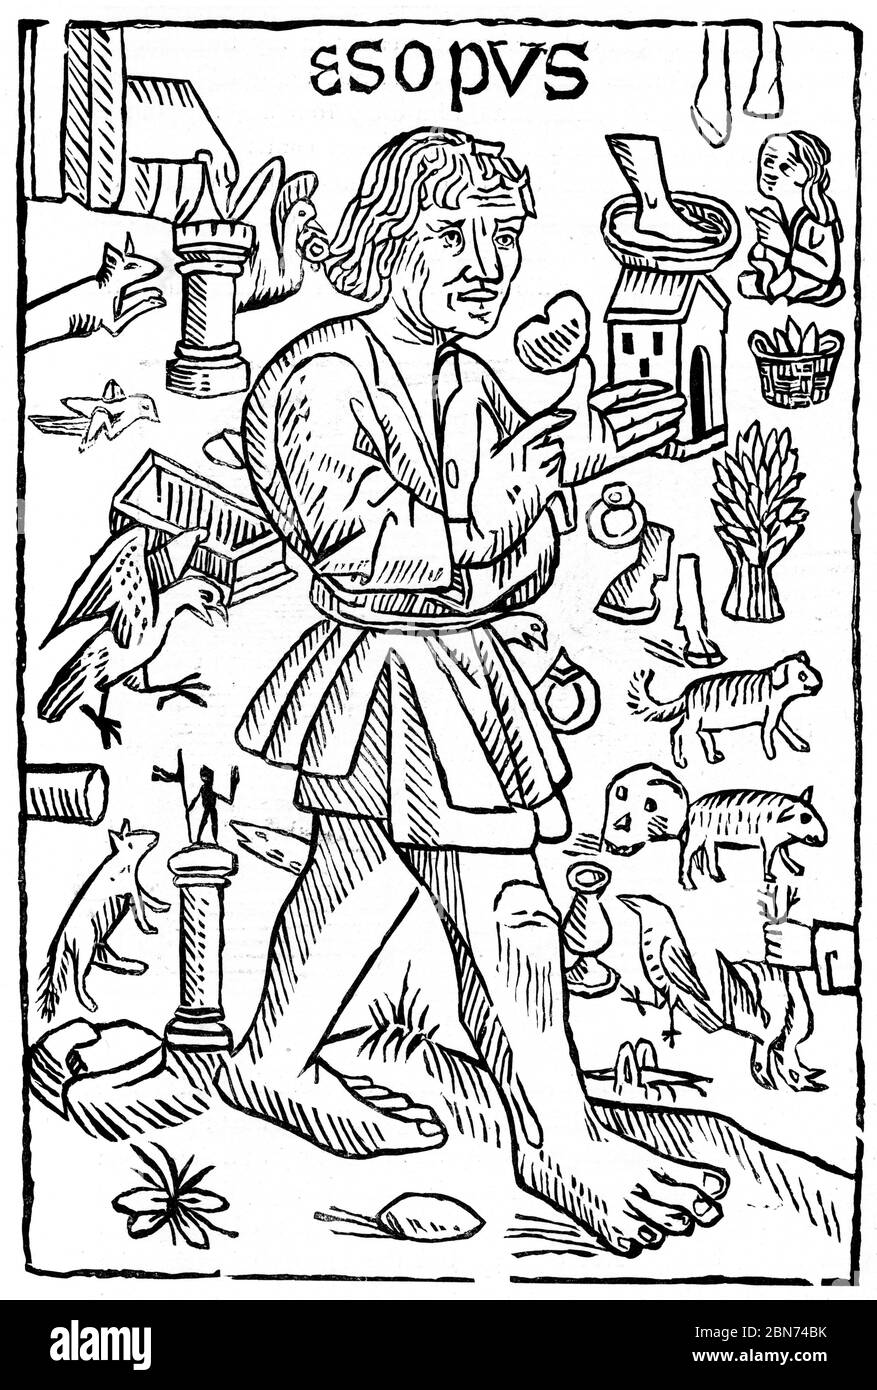 Aesop, 1484. Aesop's Fables, o Aesopica, è una collezione di favole accreditate ad Aesop, uno schiavo e narratore che si ritiene abbia vissuto nell'antica Grecia tra il 620 e il 564 a.C. Frontespizio di William Caxton (c1422-1491), Aesop's Fables, 1484. Foto Stock